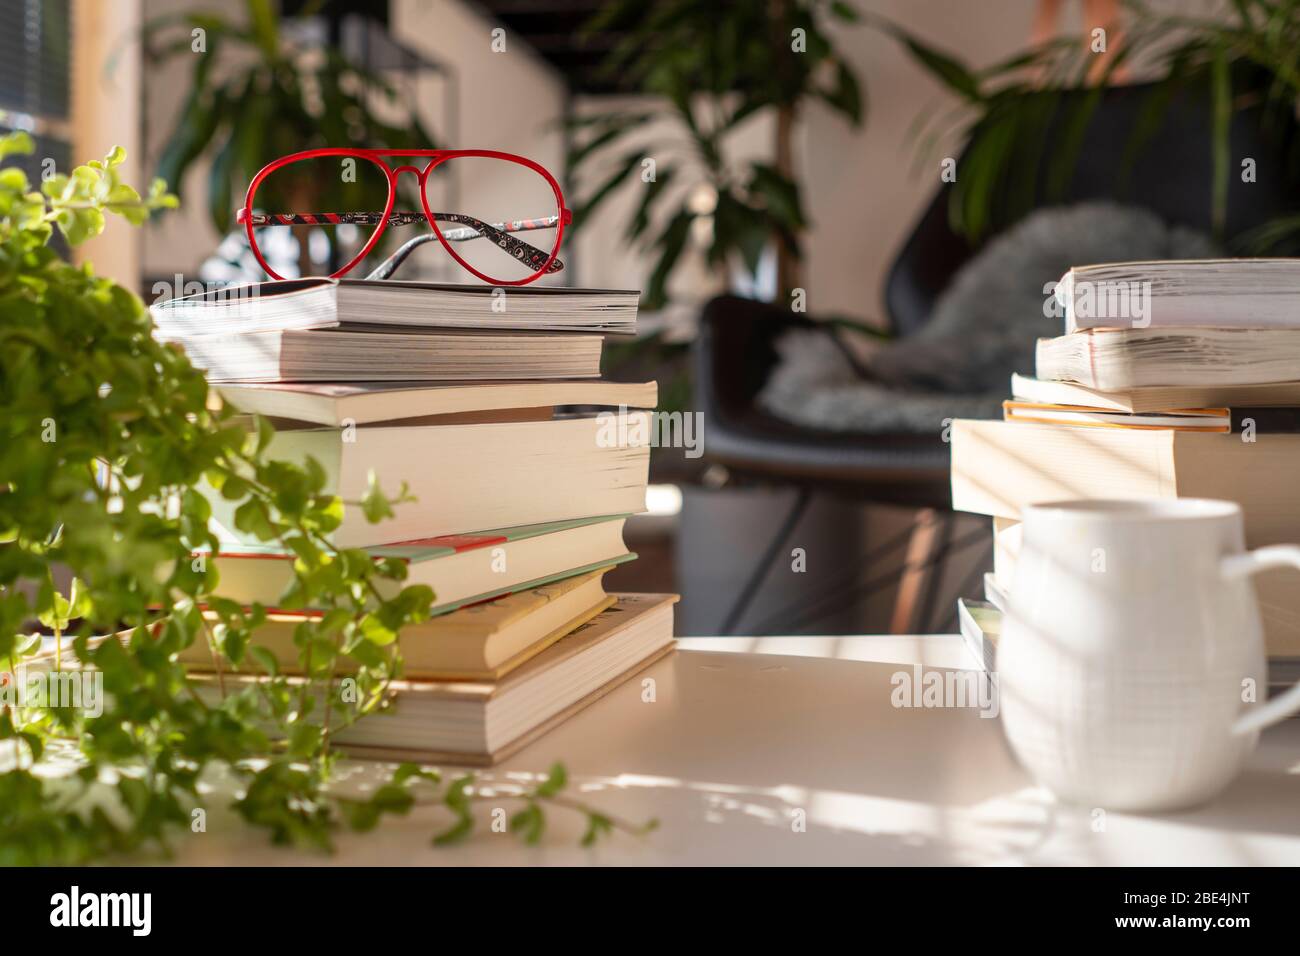 À l'intérieur d'une maison verte avec de nombreuses plantes. Une pile de différents livres sur une table avec des verres rouges et une tasse de café au coucher du soleil Banque D'Images